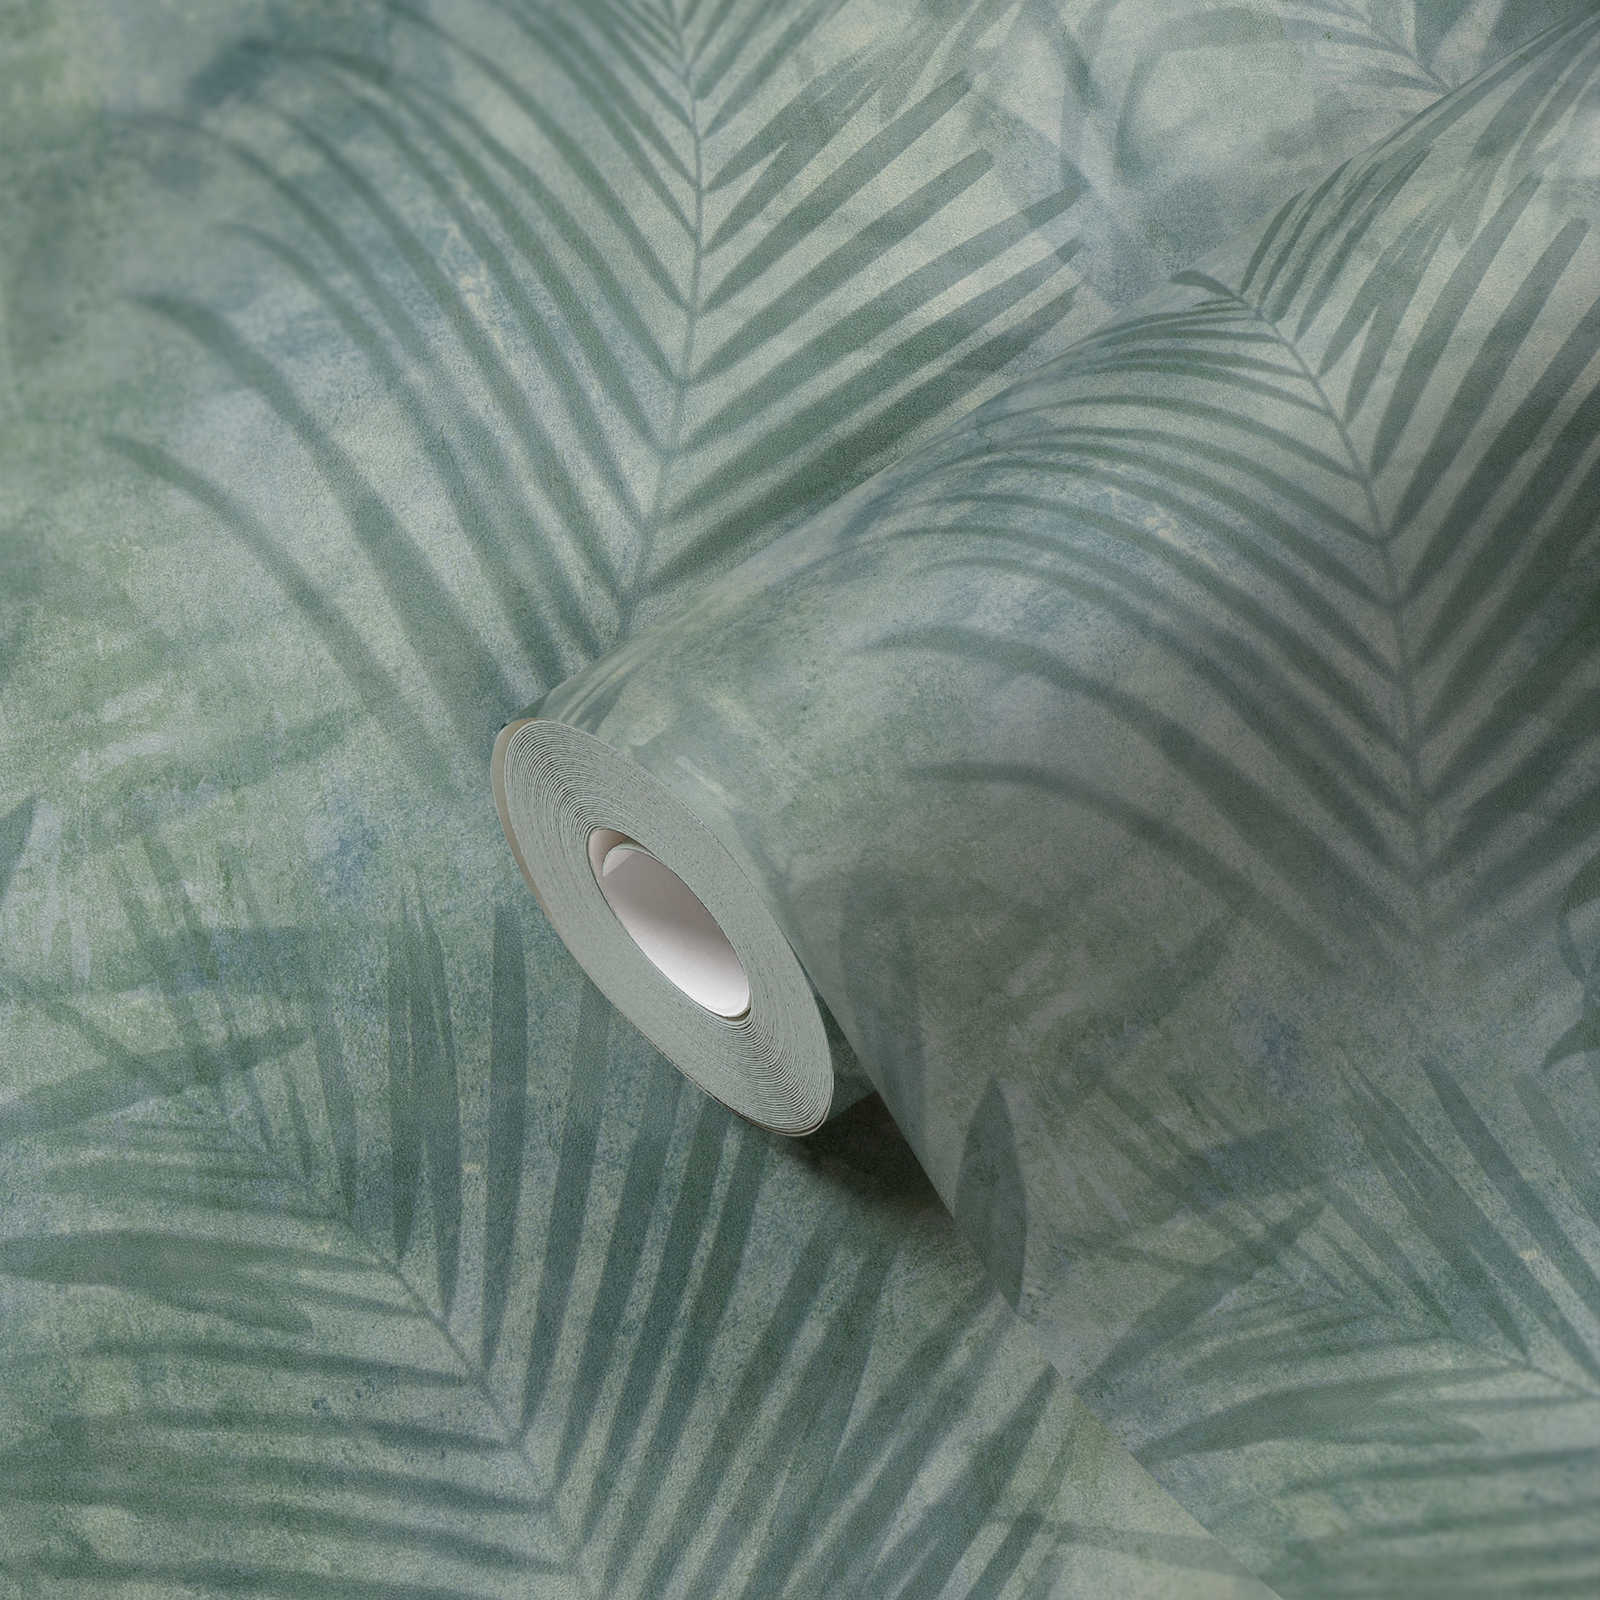             Wallpaper palm tree pattern in linen look - green, blue, grey
        